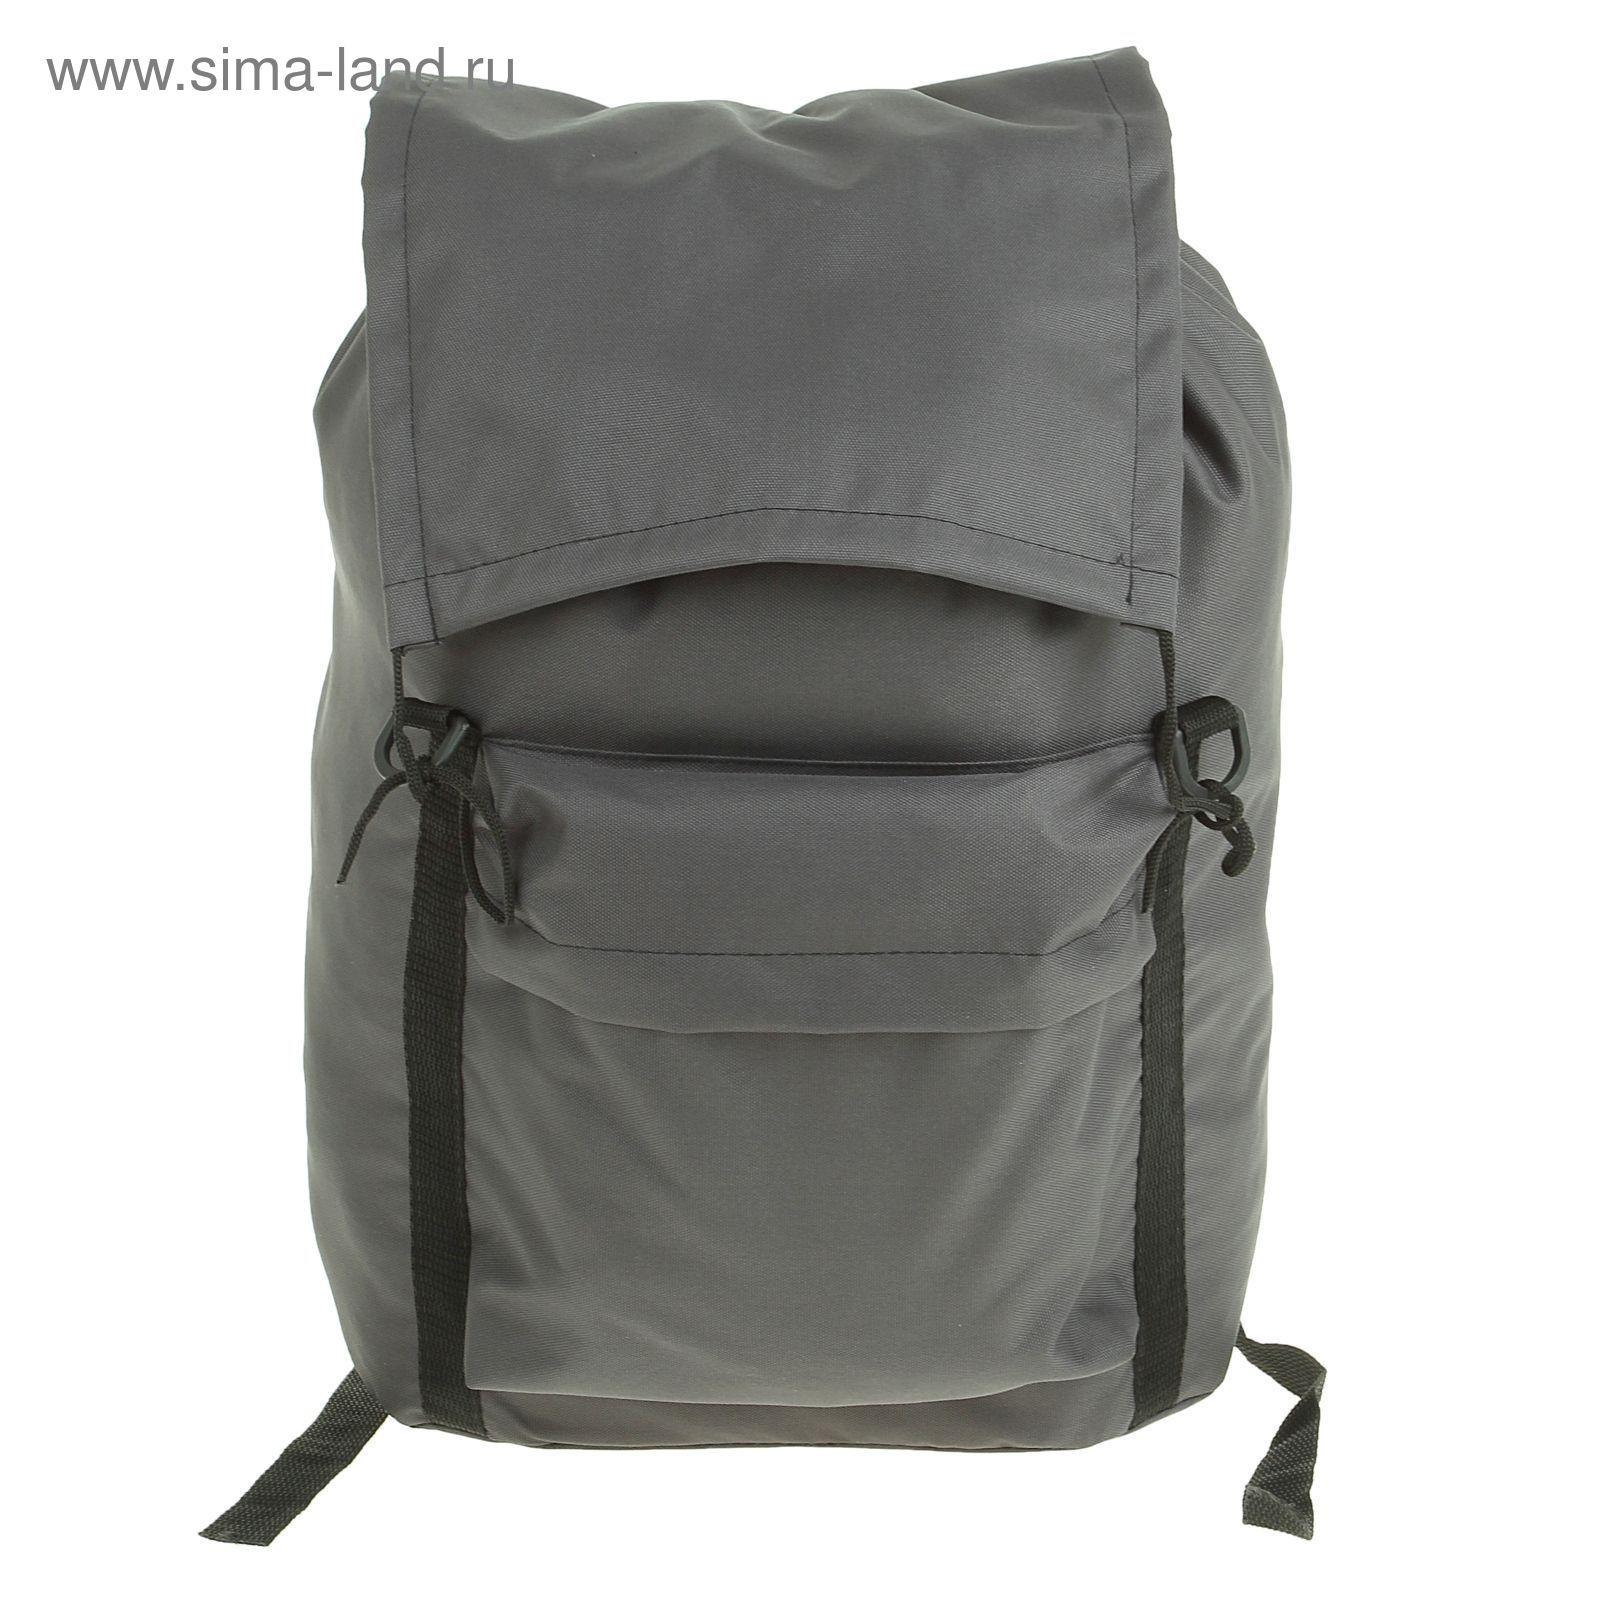 Рюкзак Тип-4, 40 л, цвета МИКС